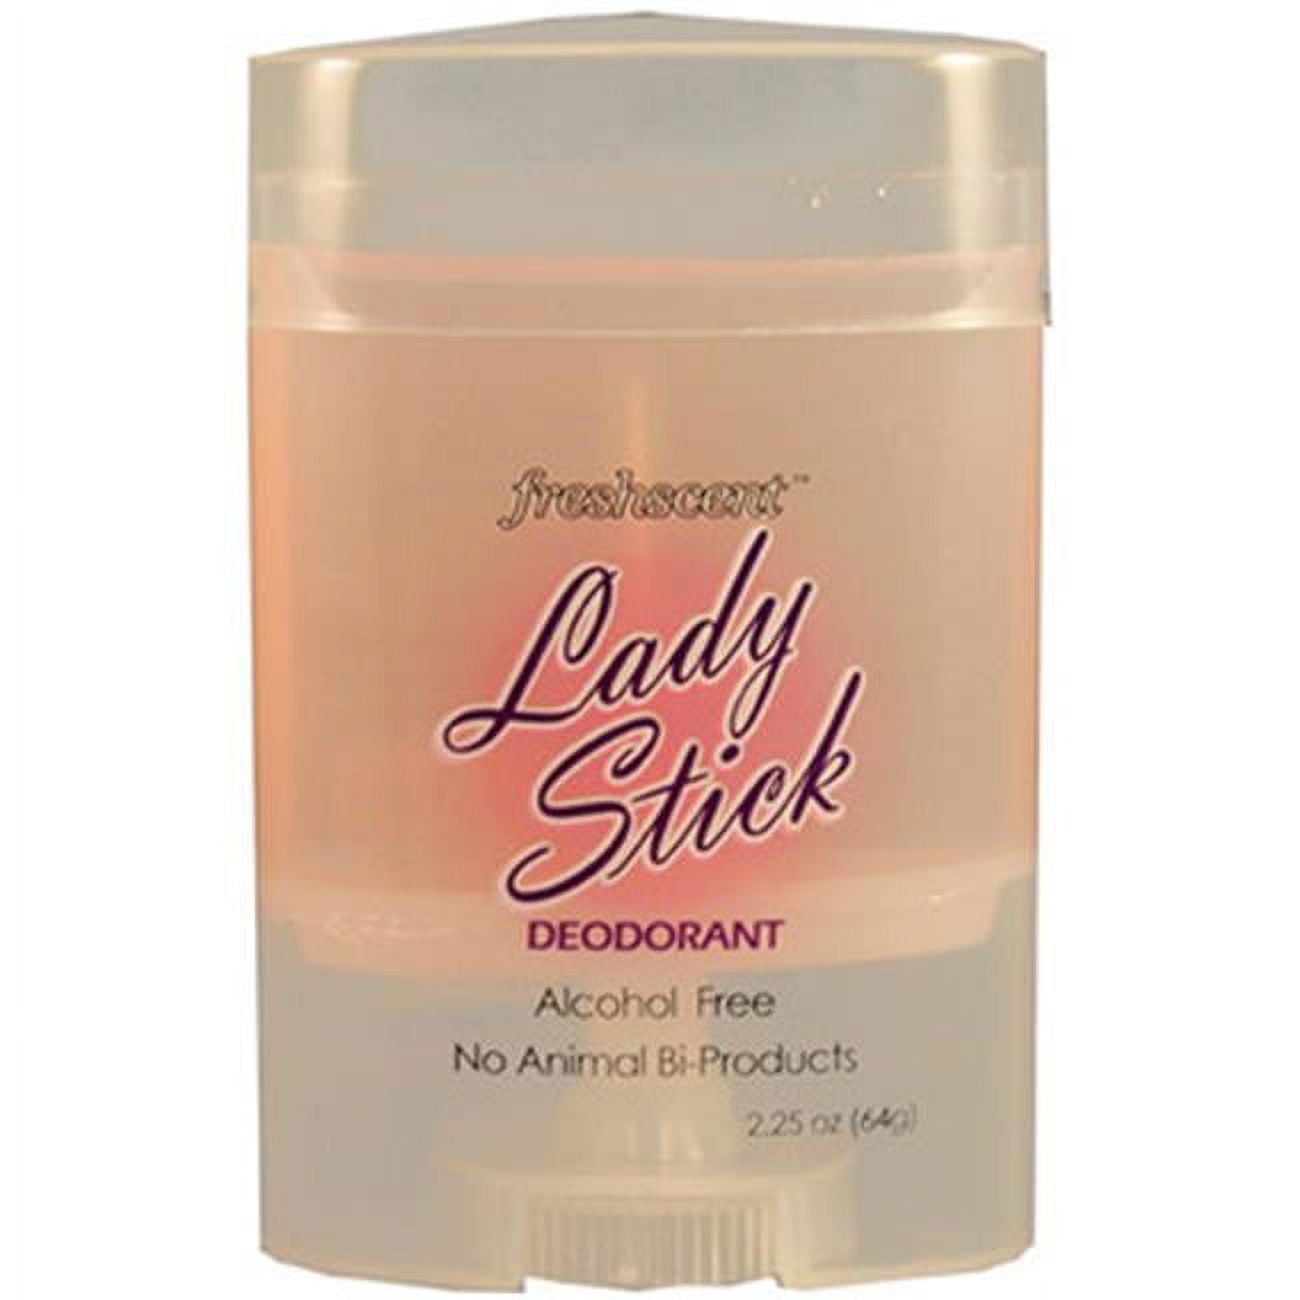 Picture of DDI 1891159 Freshscent Ladies Stick Deodorant - 2.25 oz Case of 144